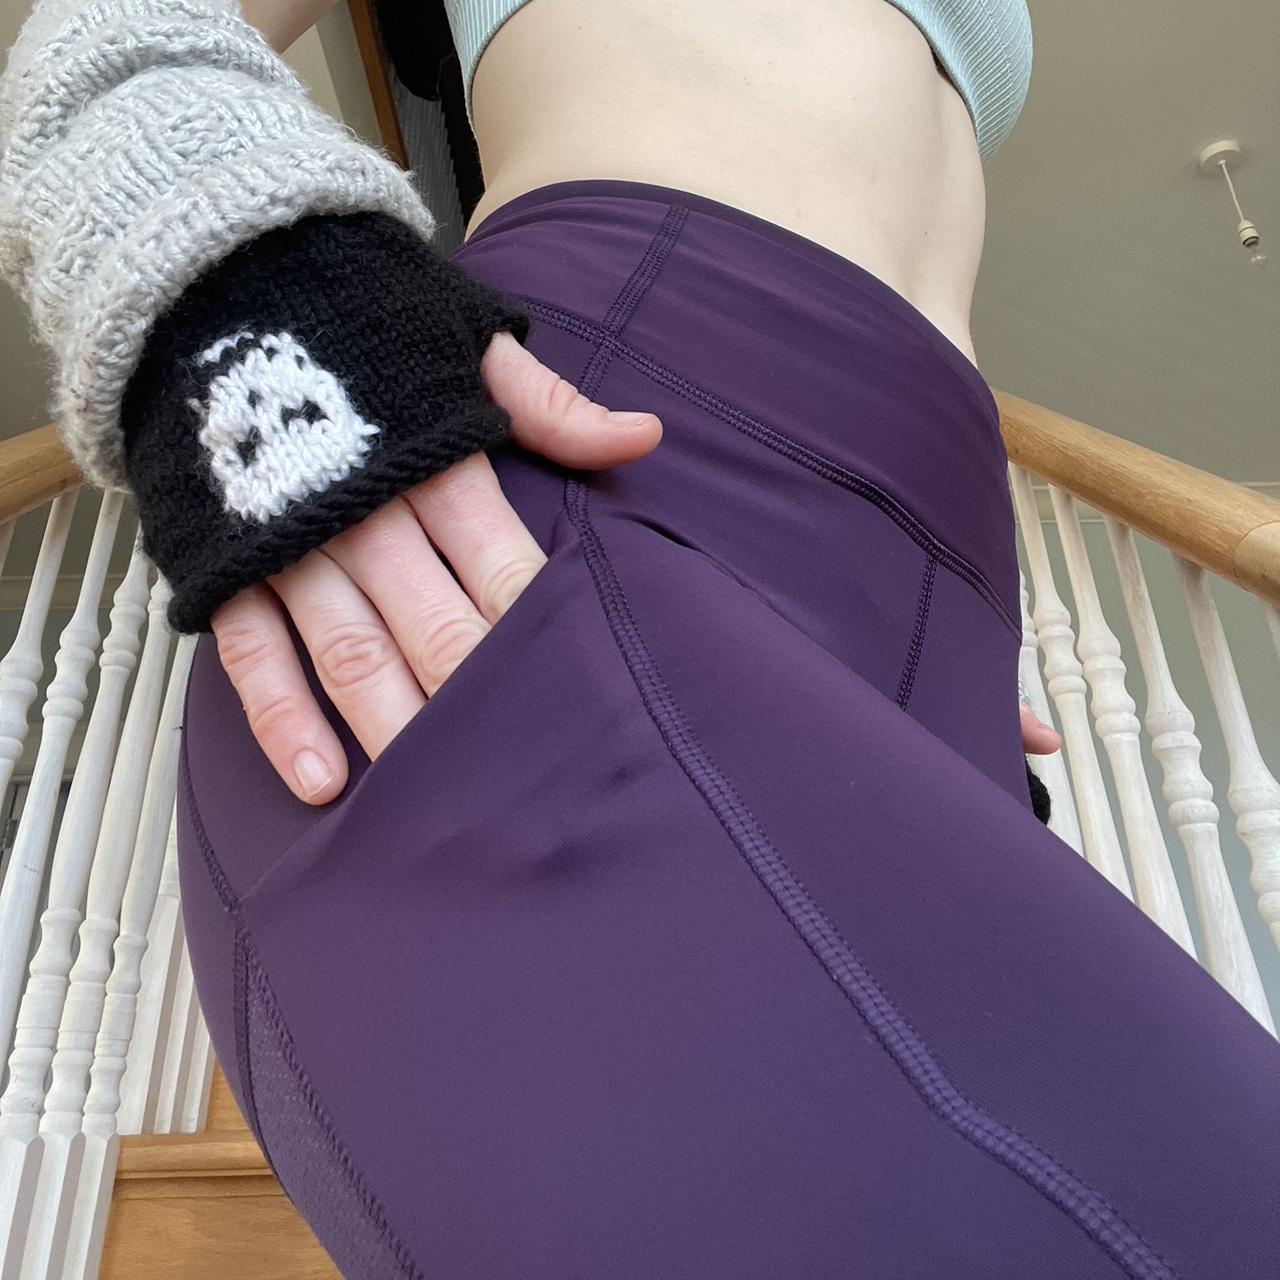 Size 8 purple lululemon leggings